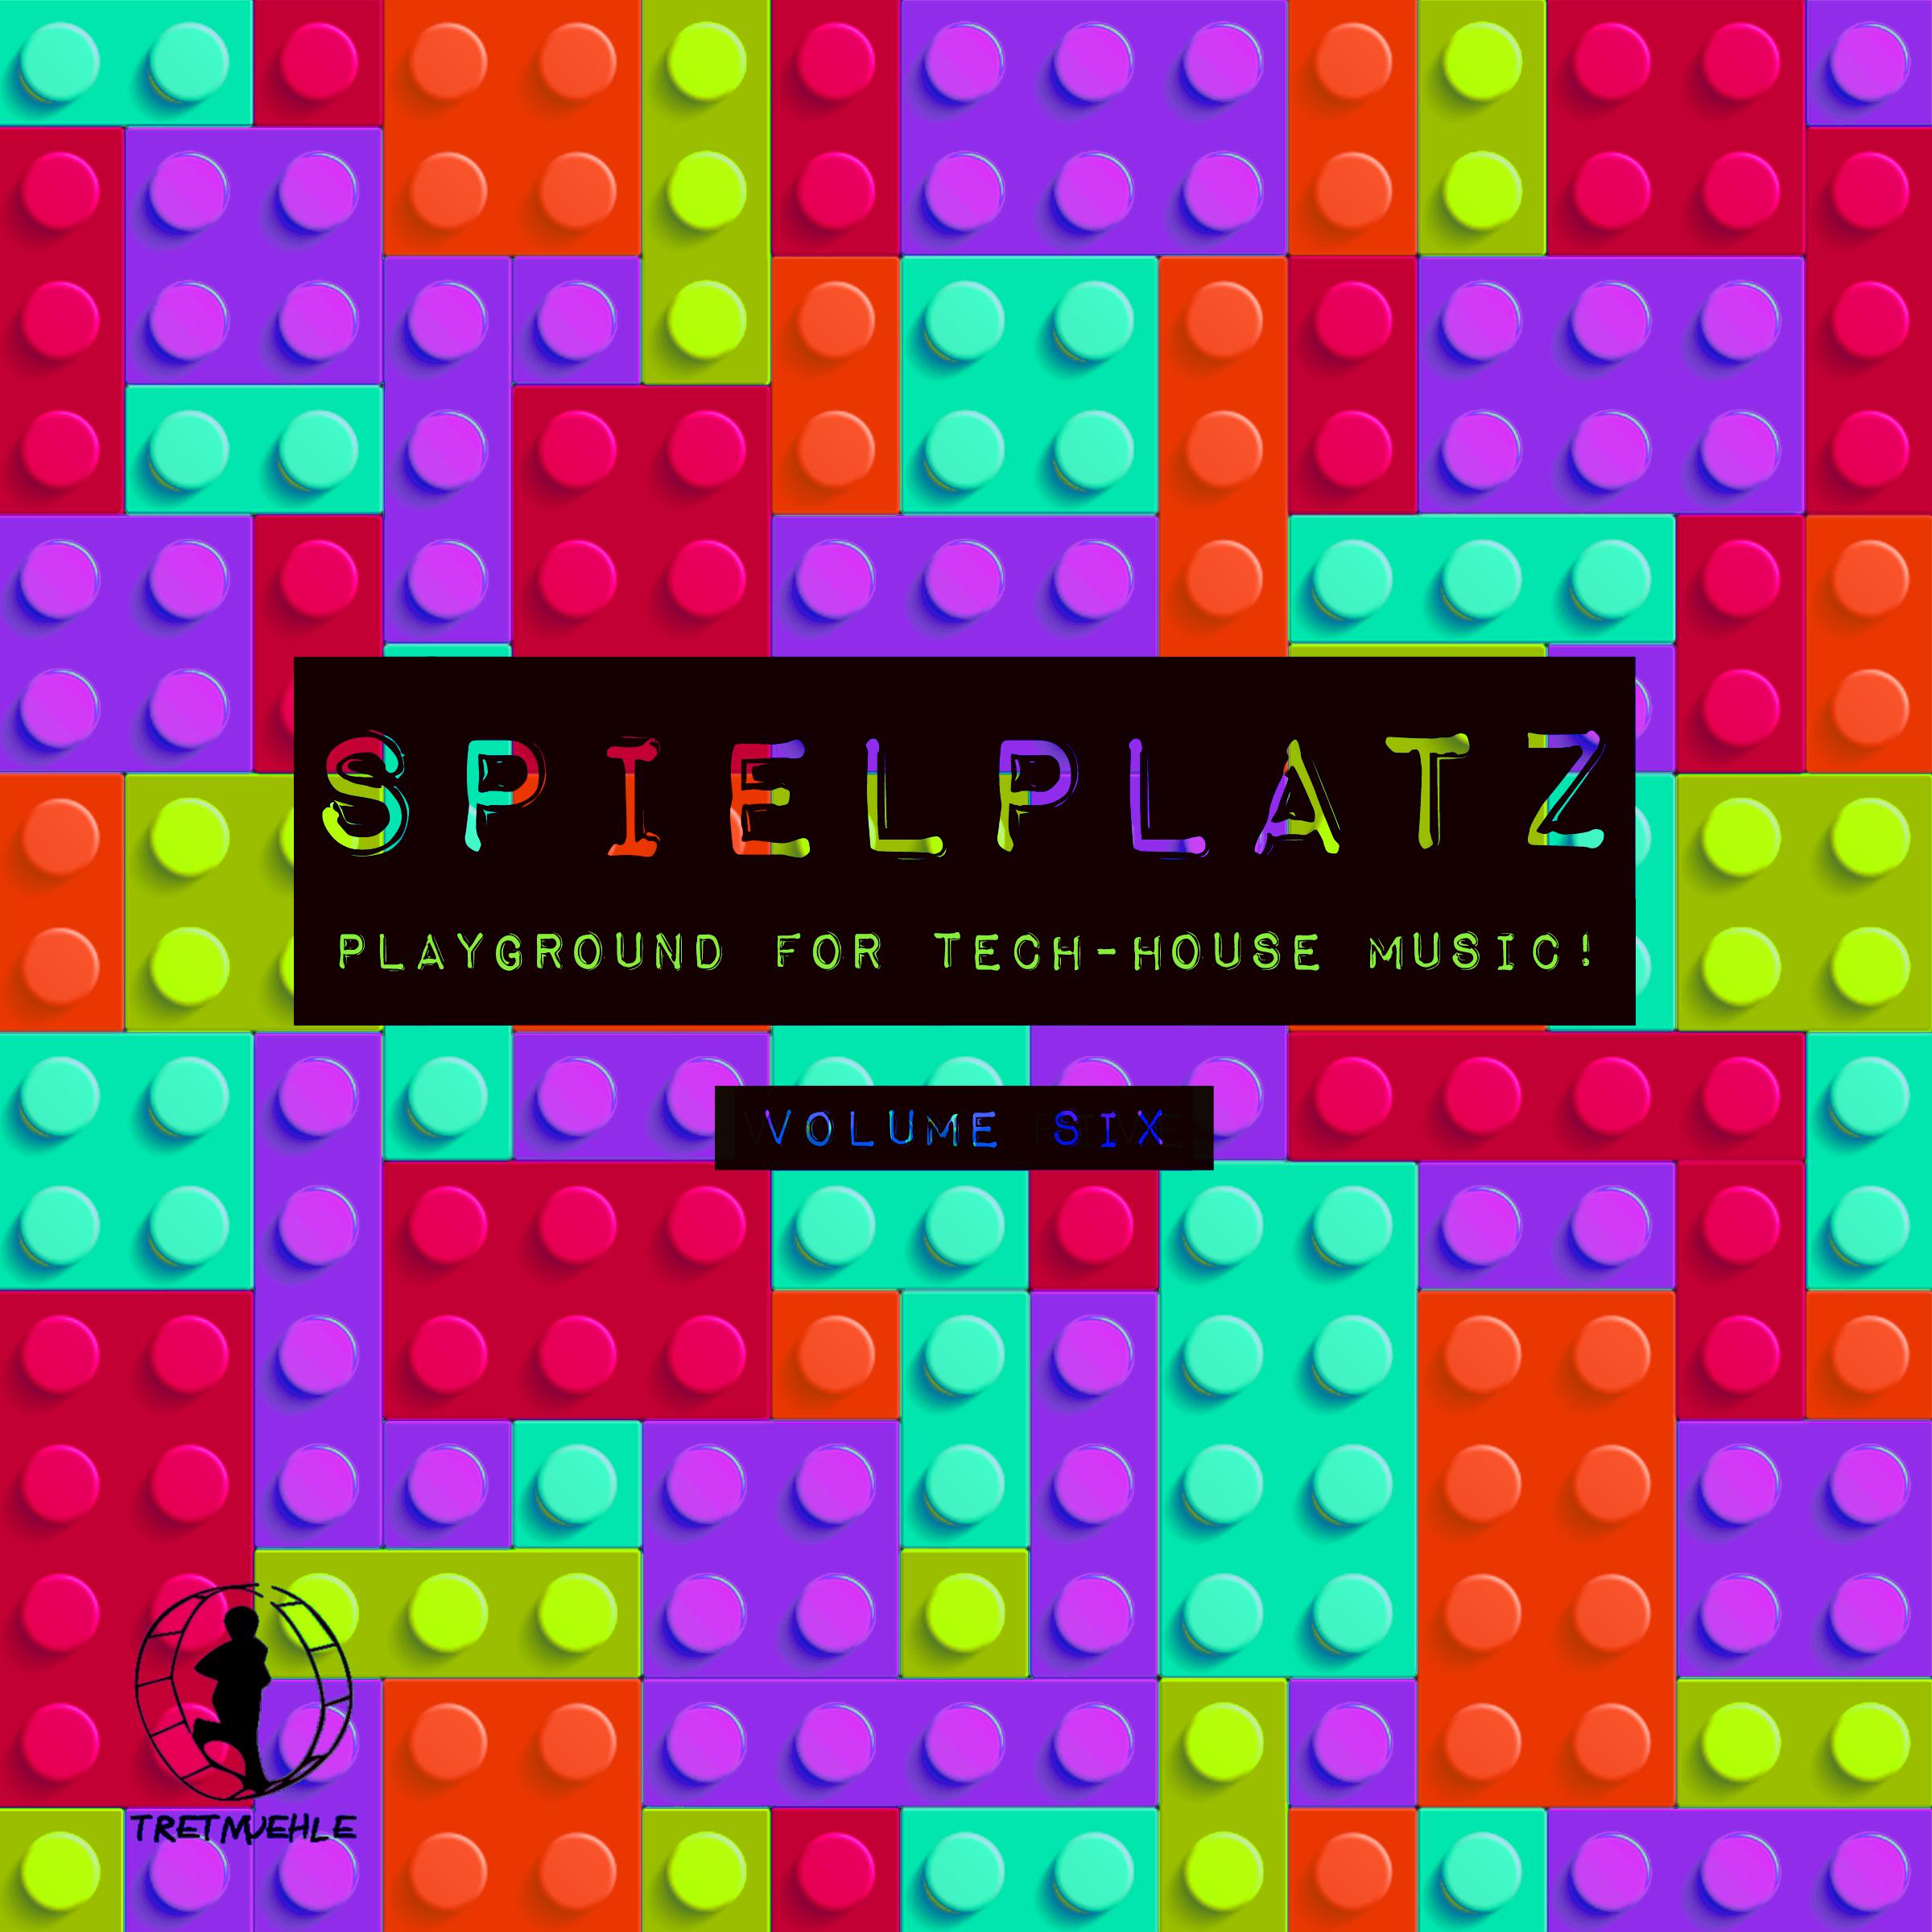 Spielplatz, Vol. 6 - Playground for Tech-House Music!